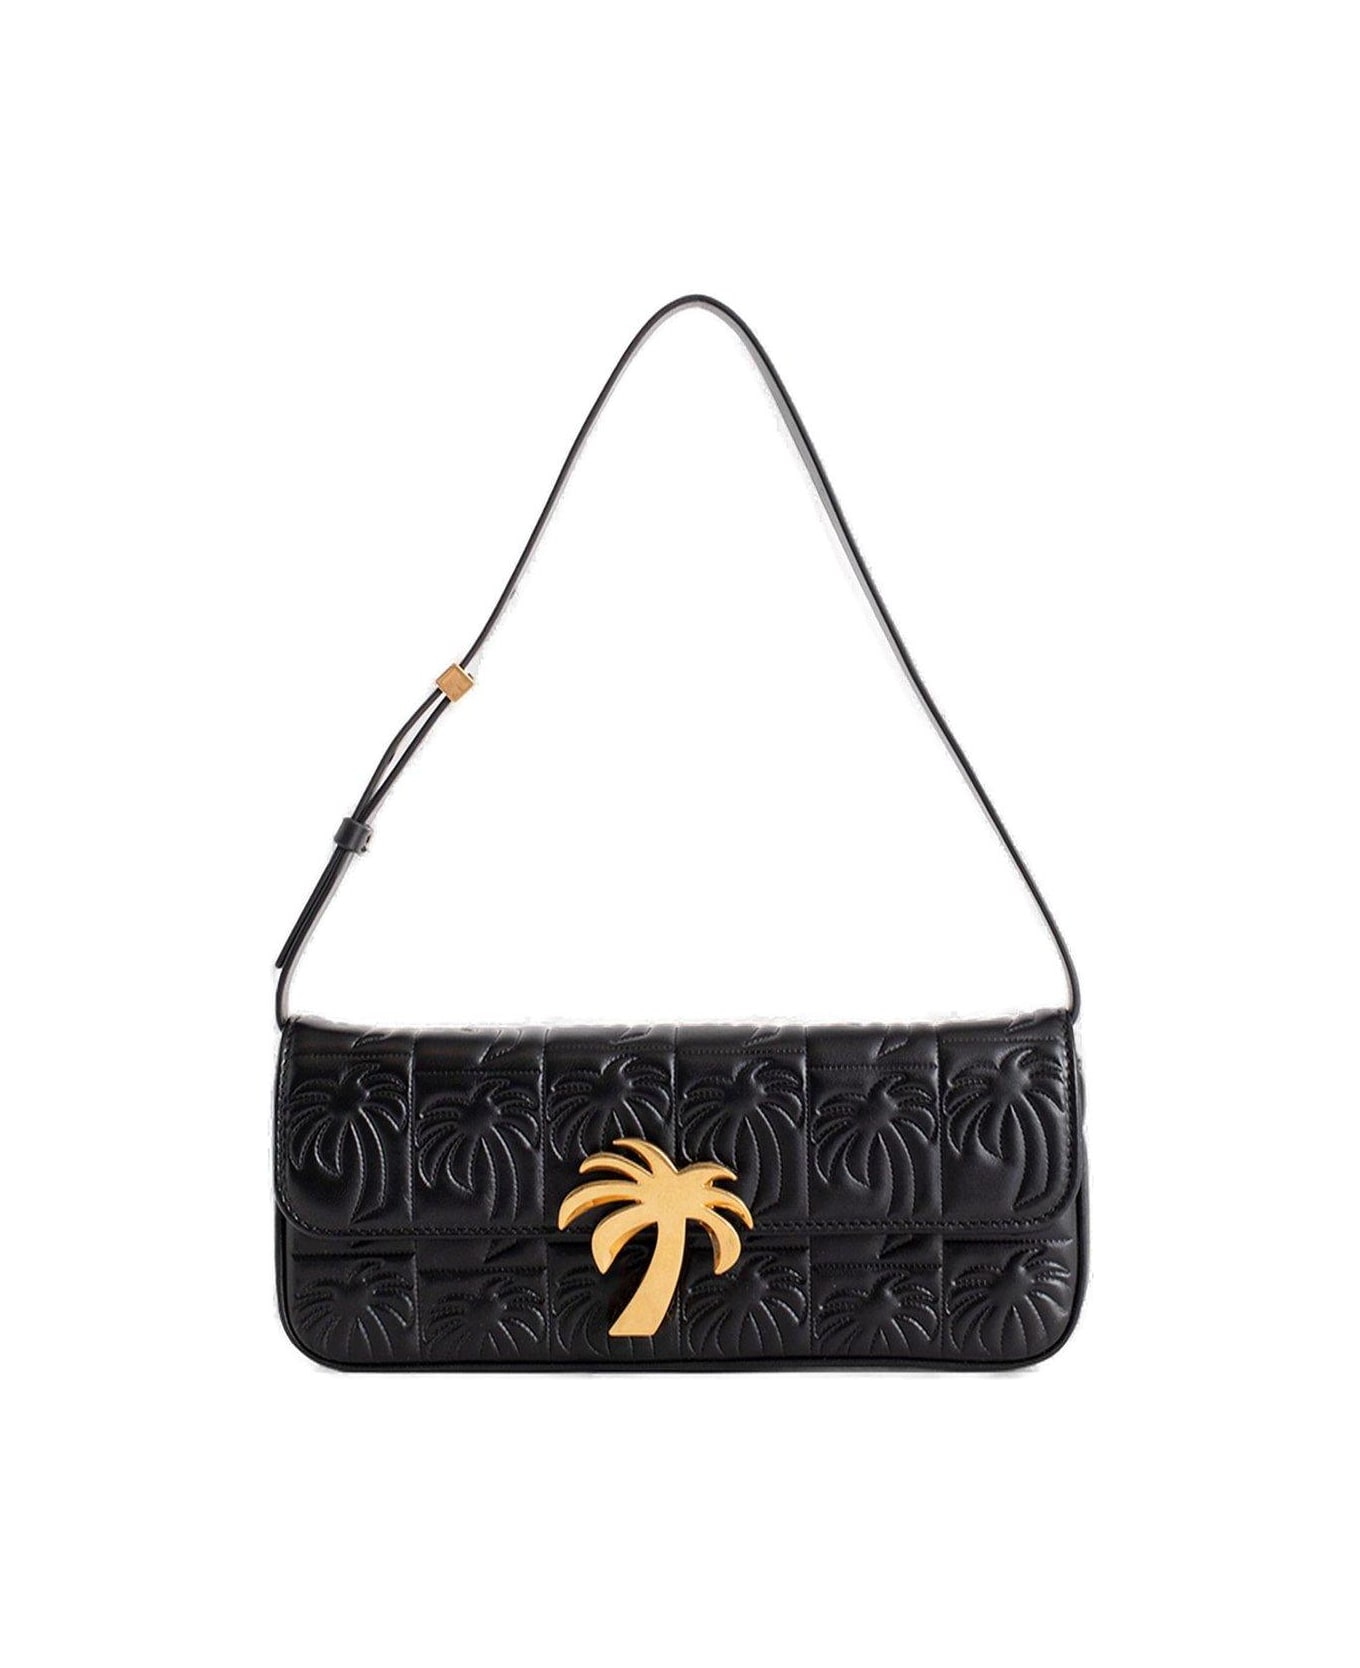 Palm Angels Palm Tree Plaque Foldover Top Shoulder Bag - Black